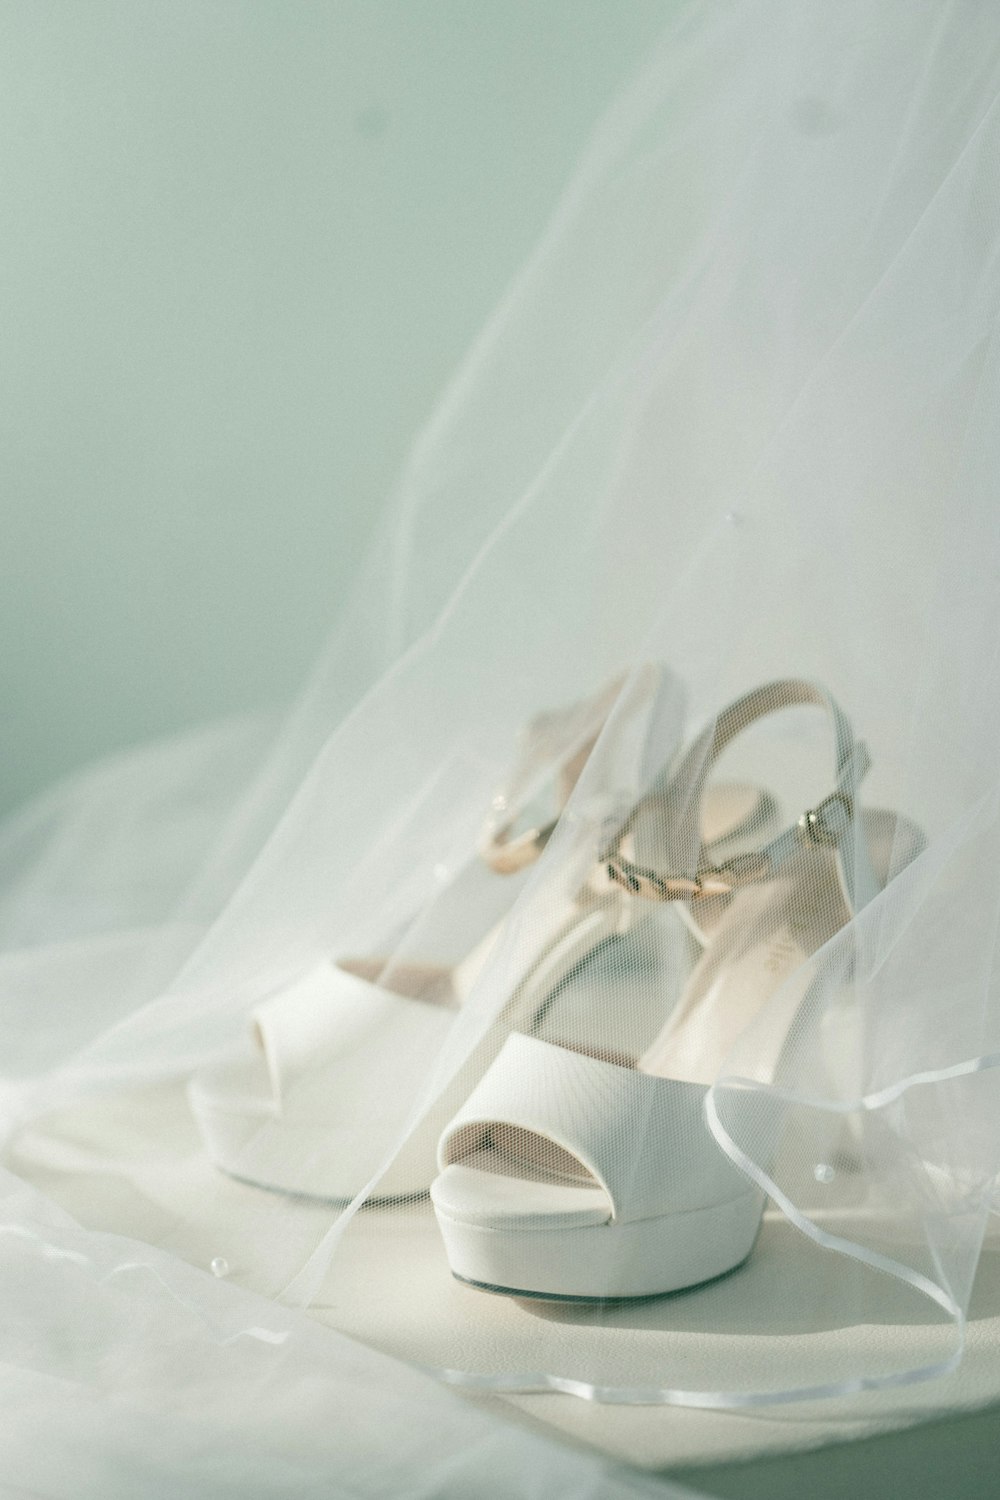 Sandalias blancas de tacón alto destalonadas con punta abierta cubiertas con velo blanco